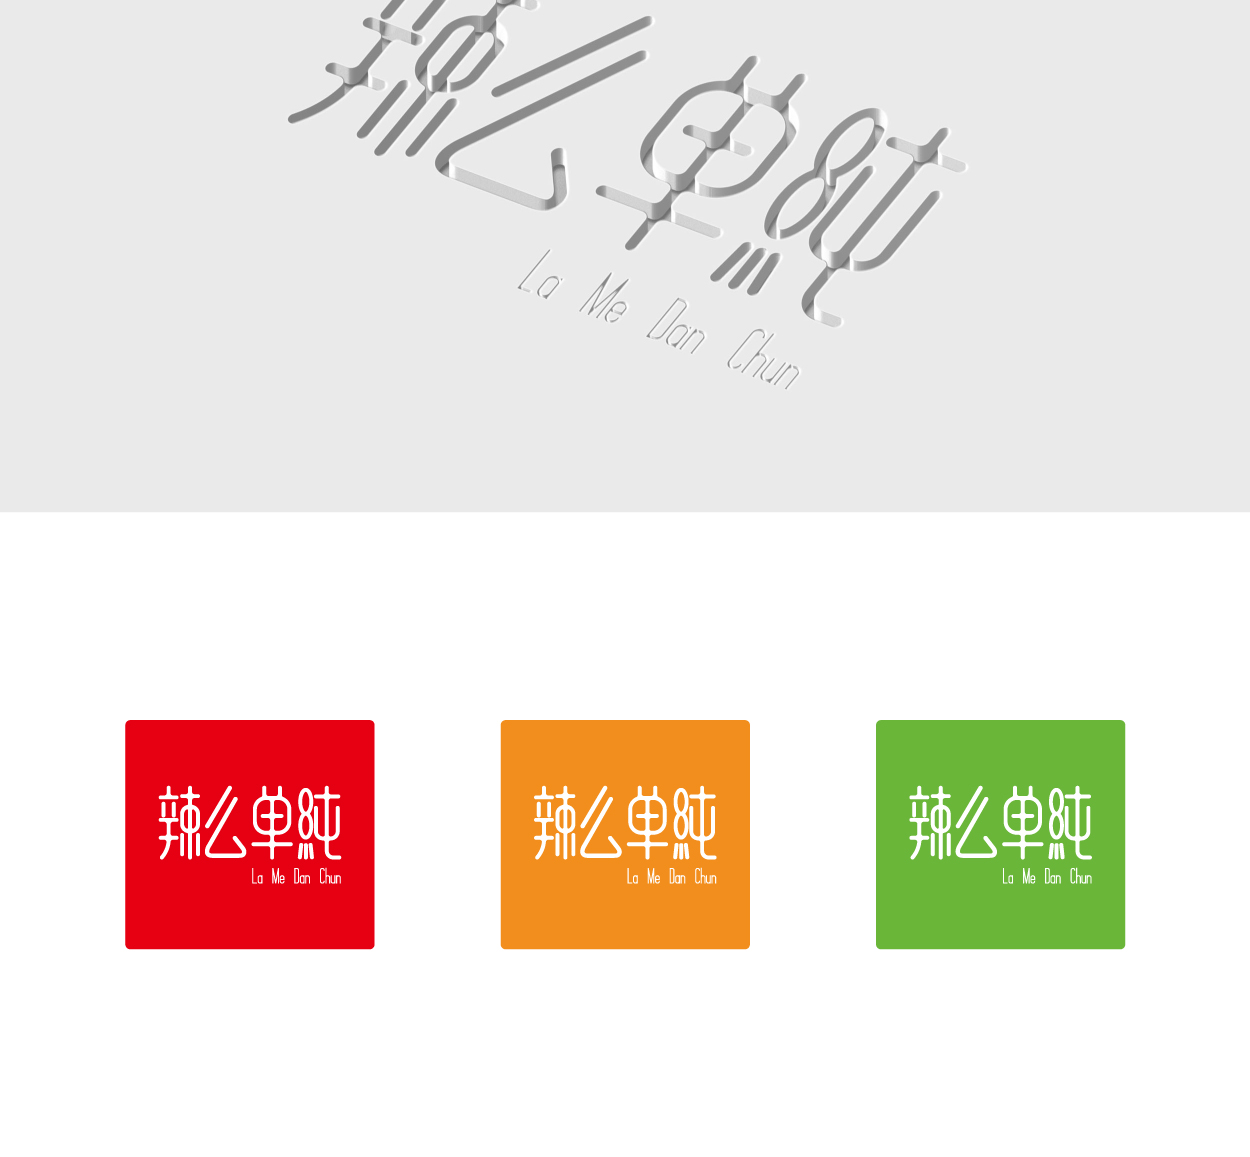 辣么单纯+La Me Dan Chun食品标志设计